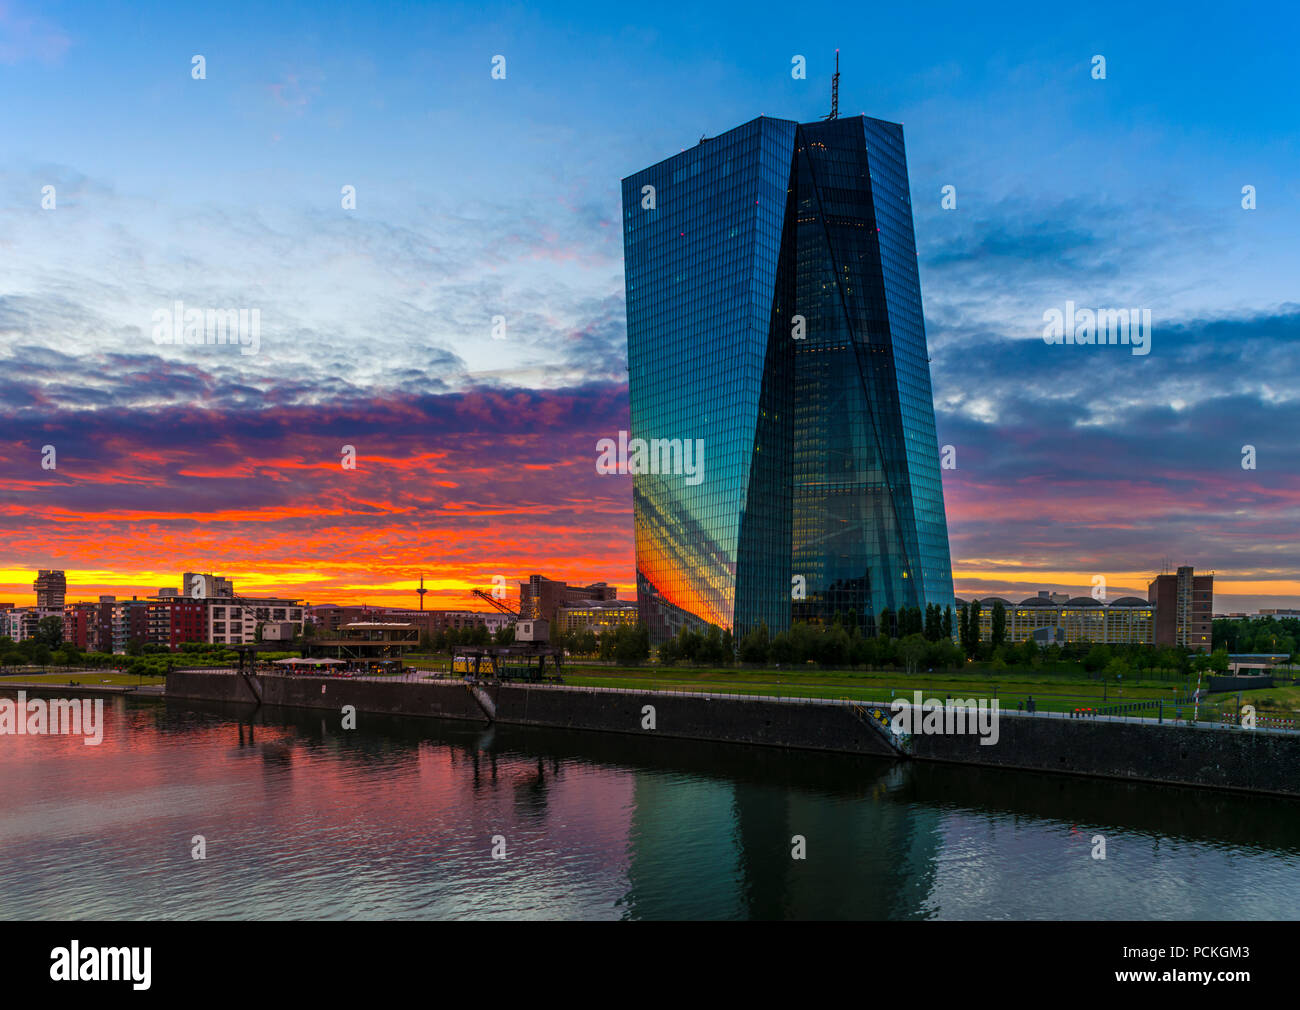 Banque centrale européenne, BCE, après le coucher du soleil, Frankfurt am Main, Hesse, Allemagne Banque D'Images